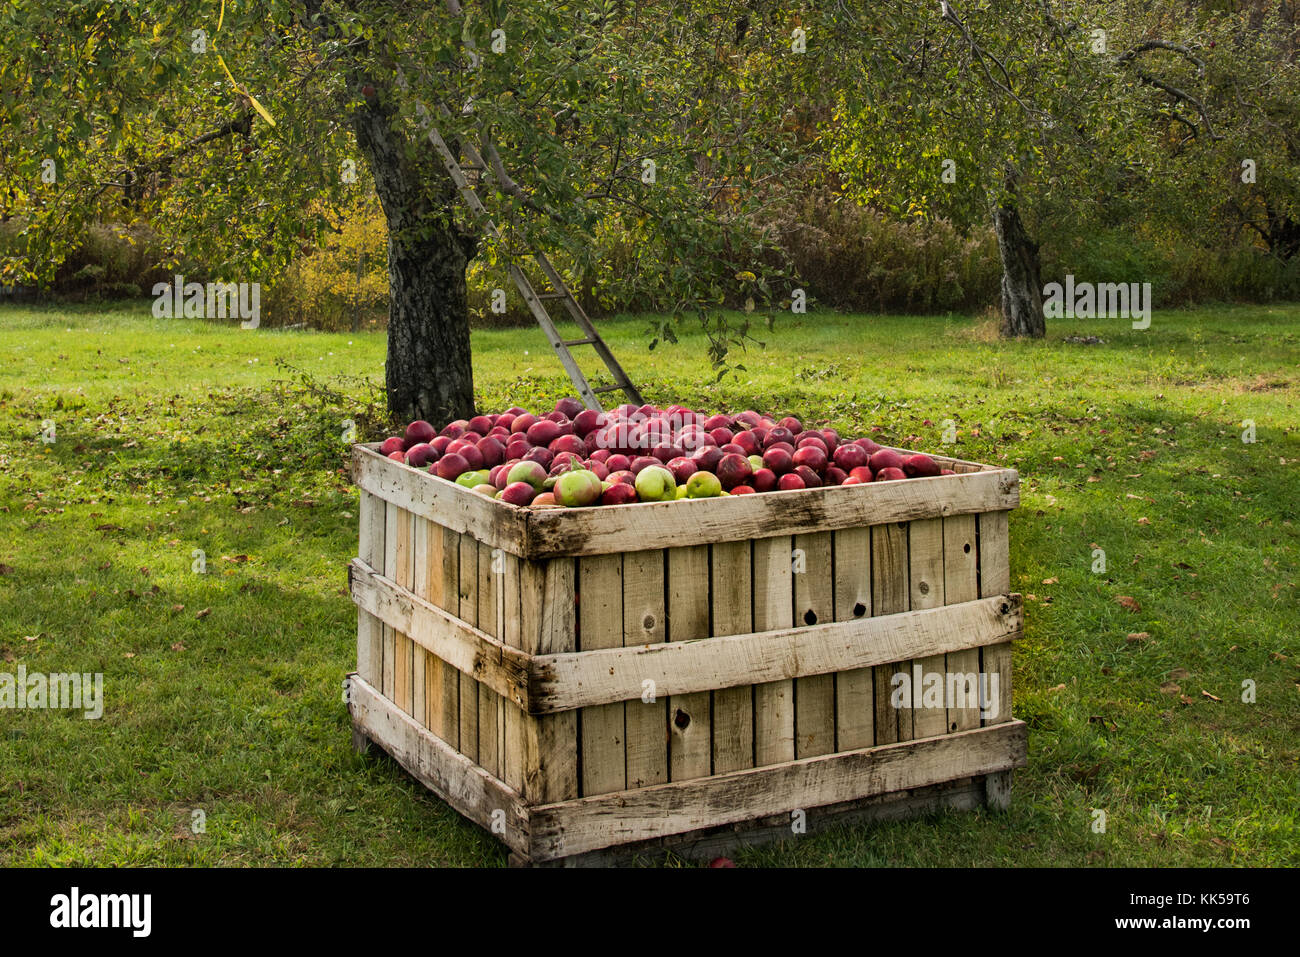 Apple farm, una scatola piena di mele. Foto Stock